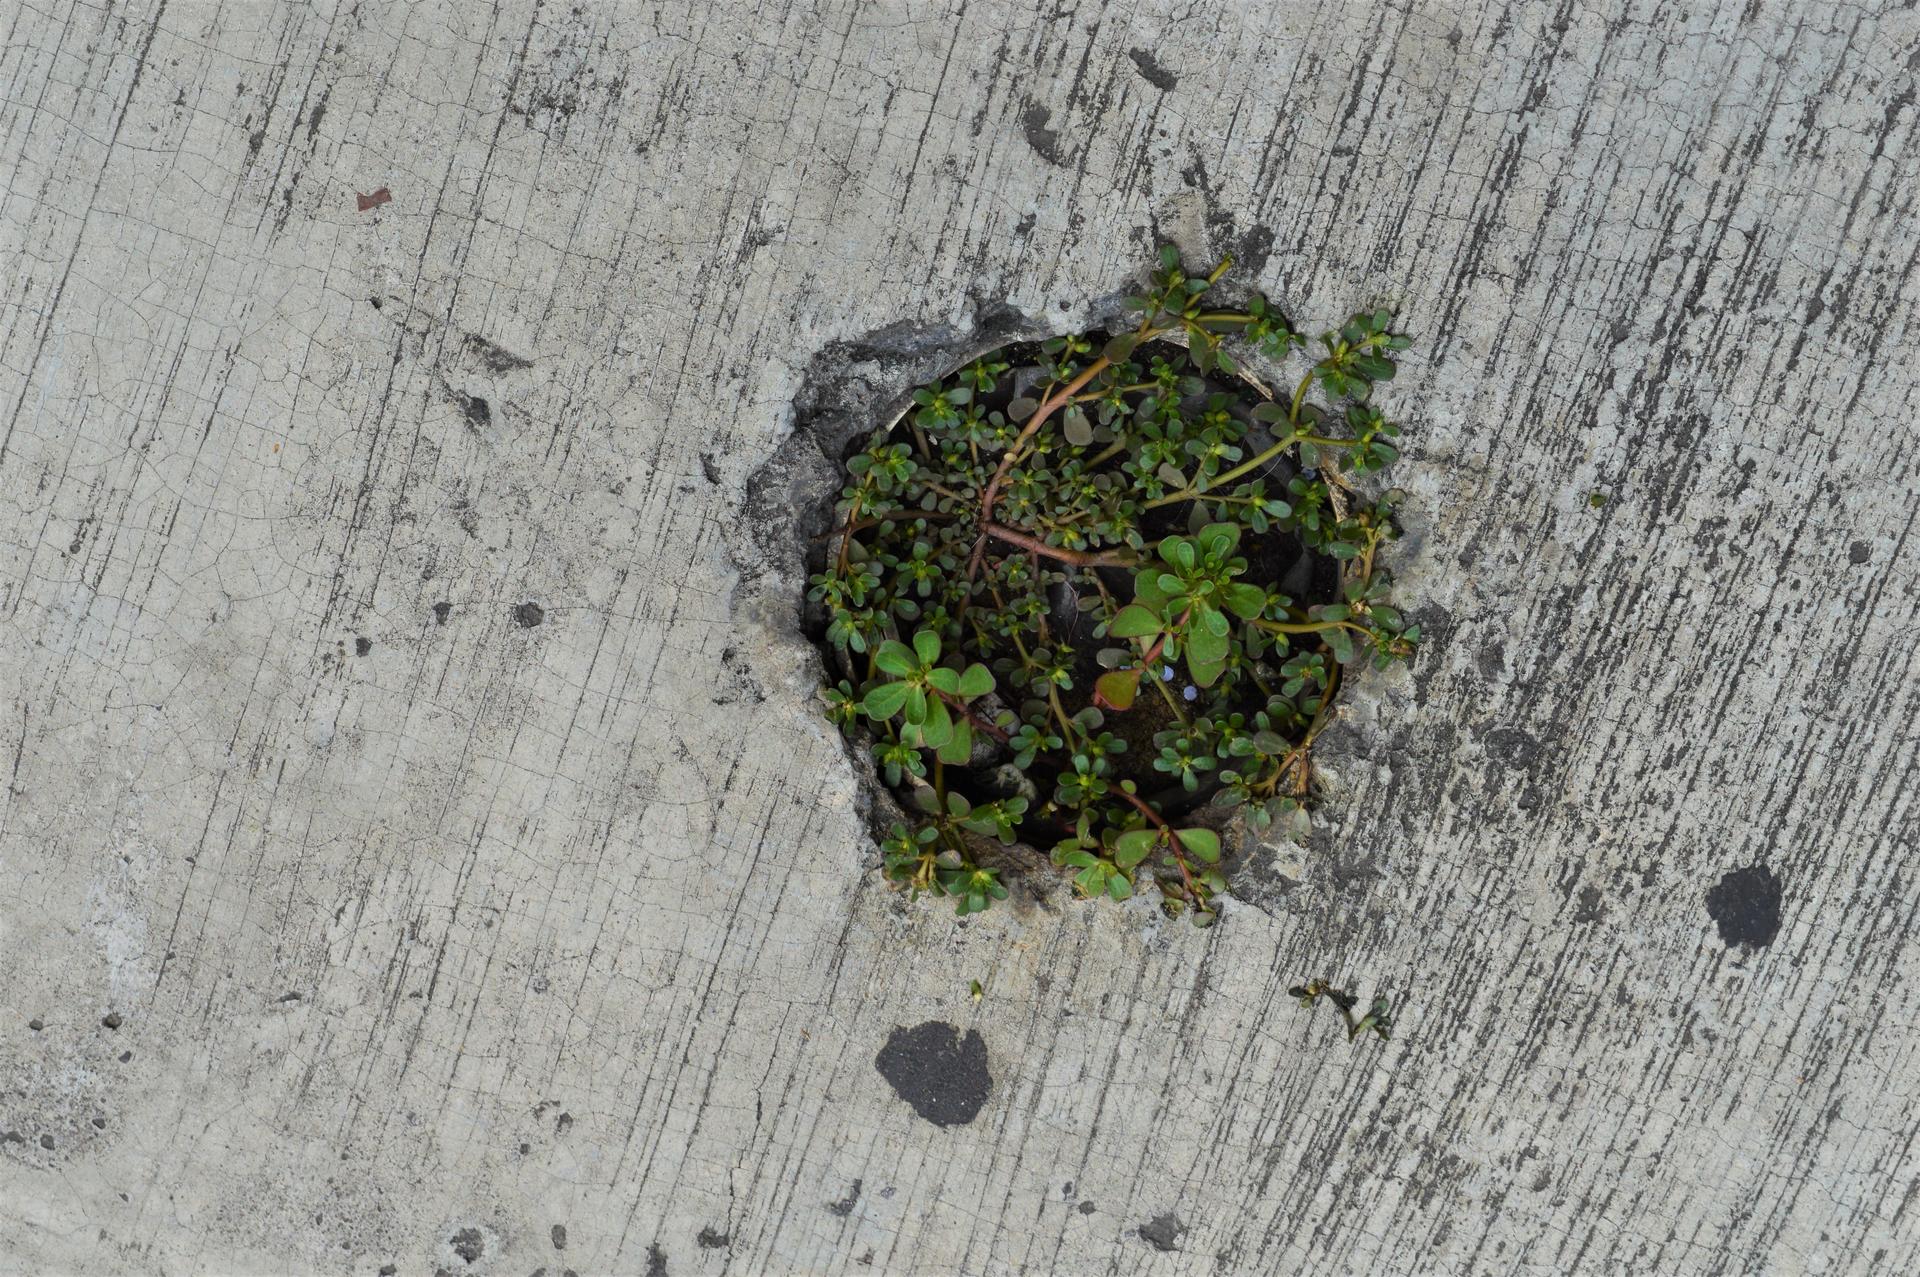 Purslane growing from a hole in the sidewalk